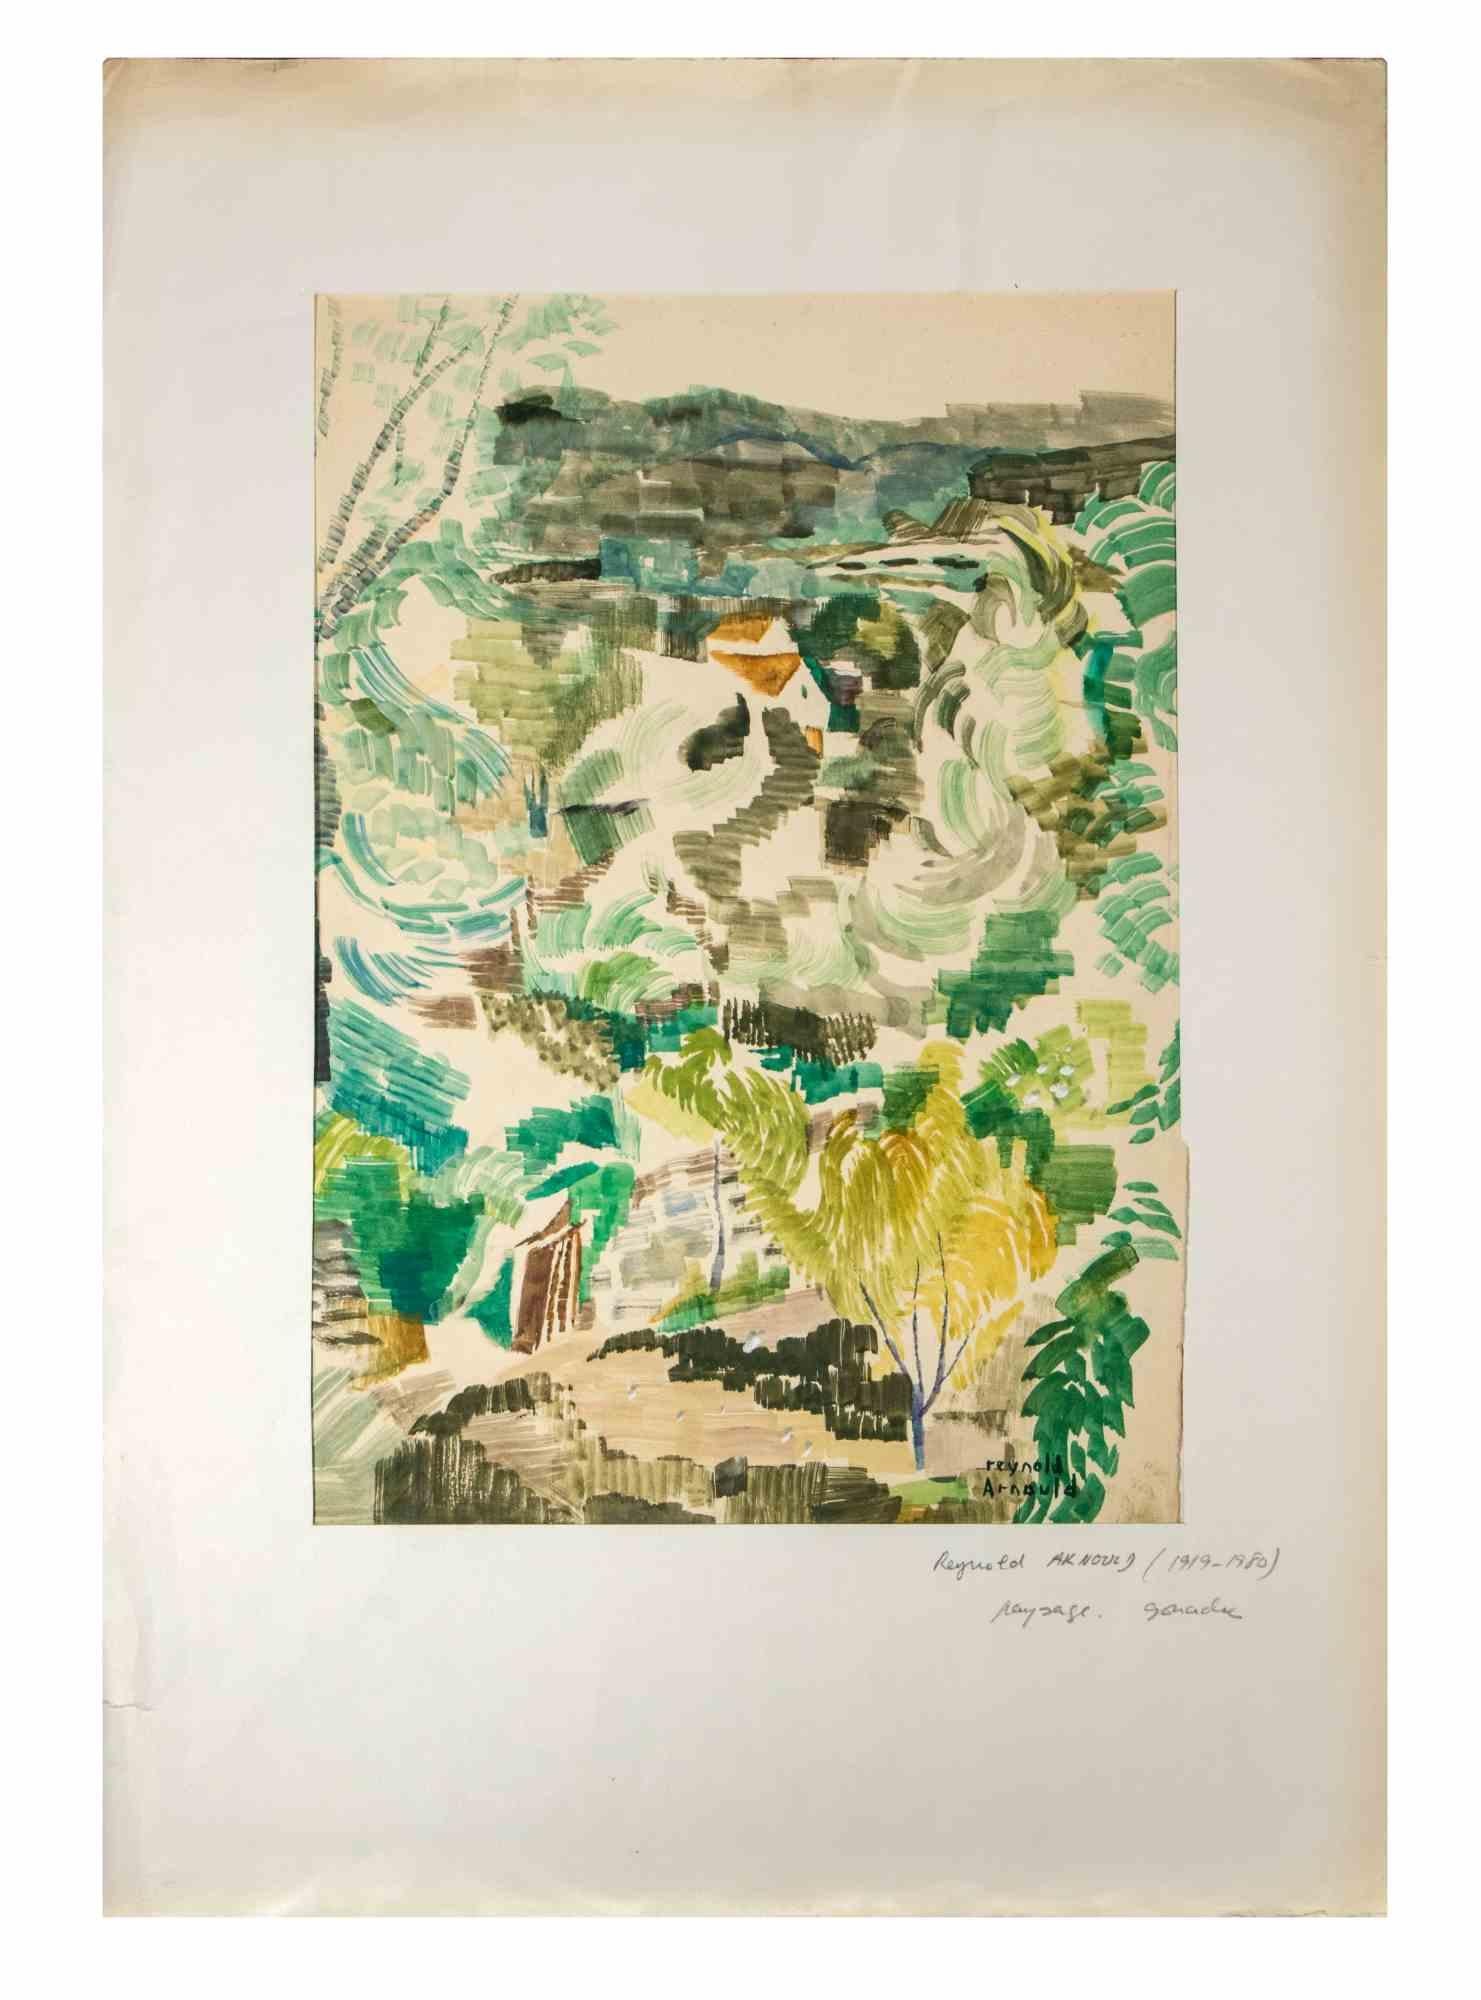 Paysage est une Gouache sur papier réalisée par Reynold Arnould  (Le Havre 1919 - Parigi 1980).

Bon état, inclus un passe-partout en carton blanc (54x37,5 cm).

Signé à la main par l'artiste dans le coin inférieur droit.

Reynold Arnould est né au